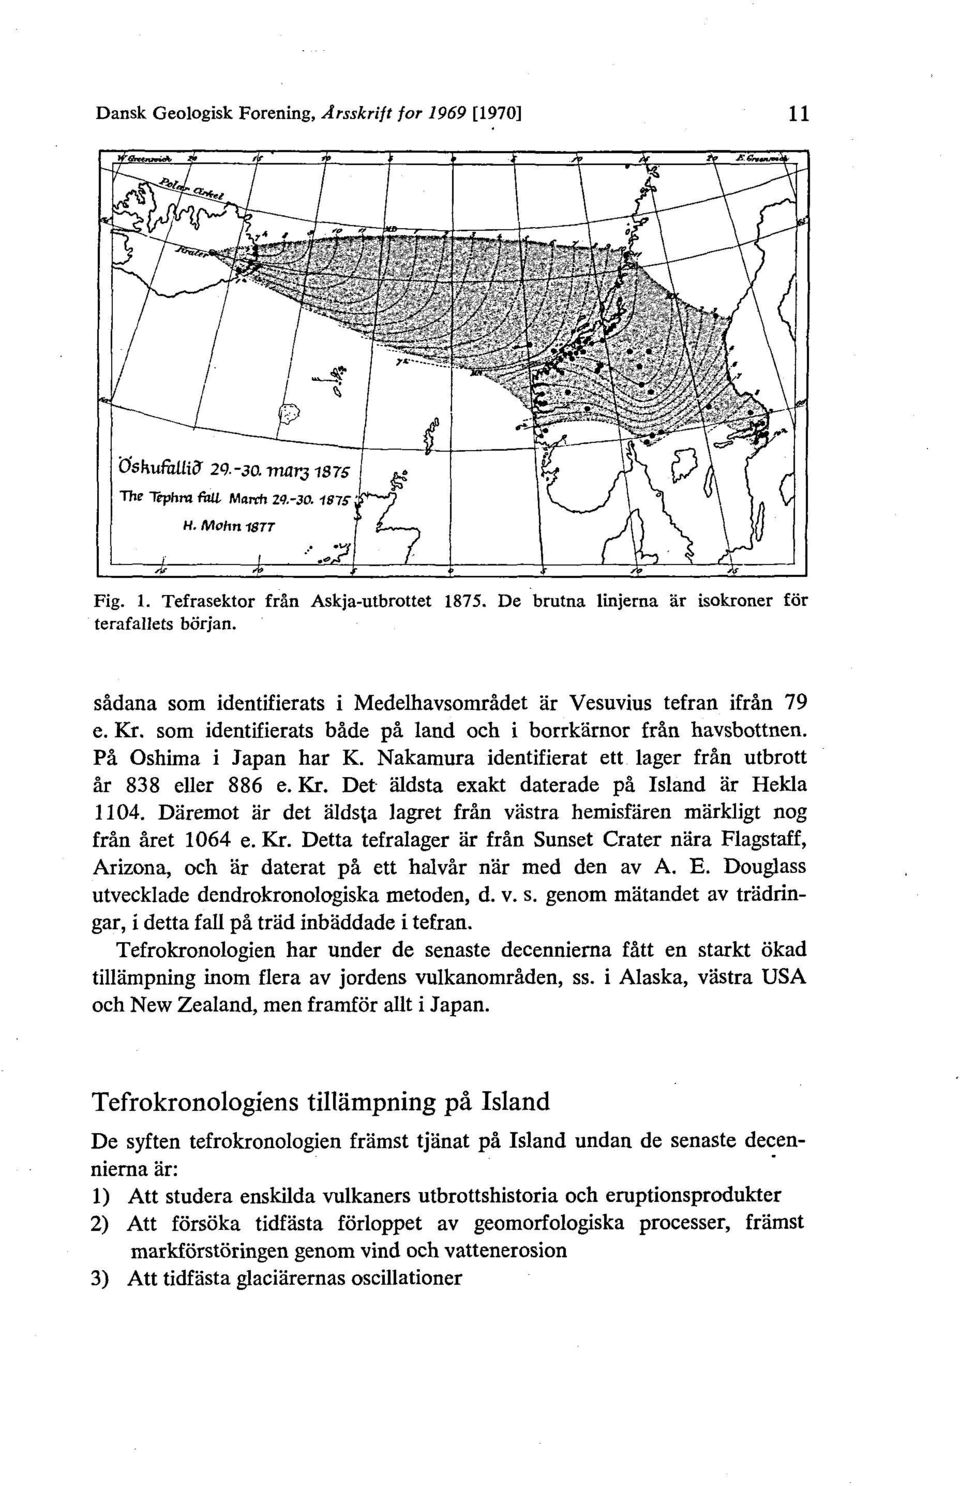 Nakamura identifierat ett lager från utbrott år 838 eller 886 e. Kr. Det aldsta exakt daterade på Island ar Hekla 1104.